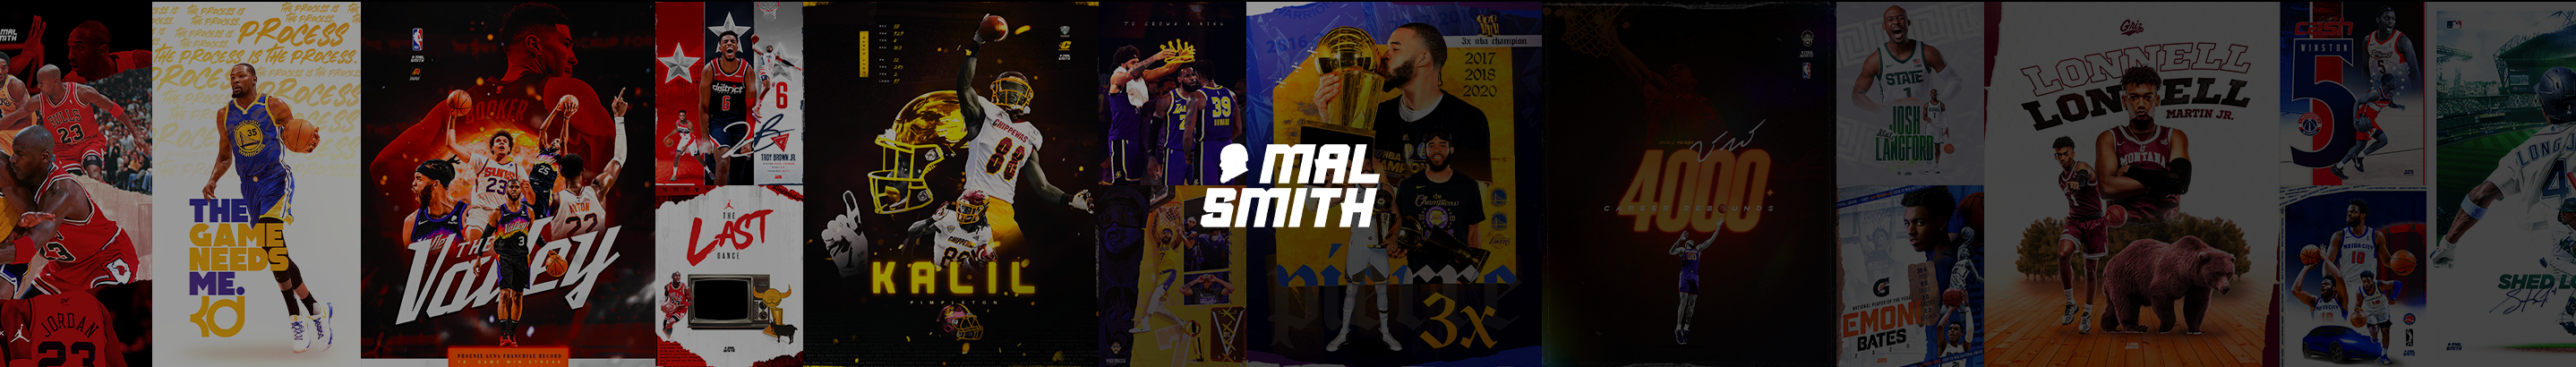 Bannière de profil de Mal Smith